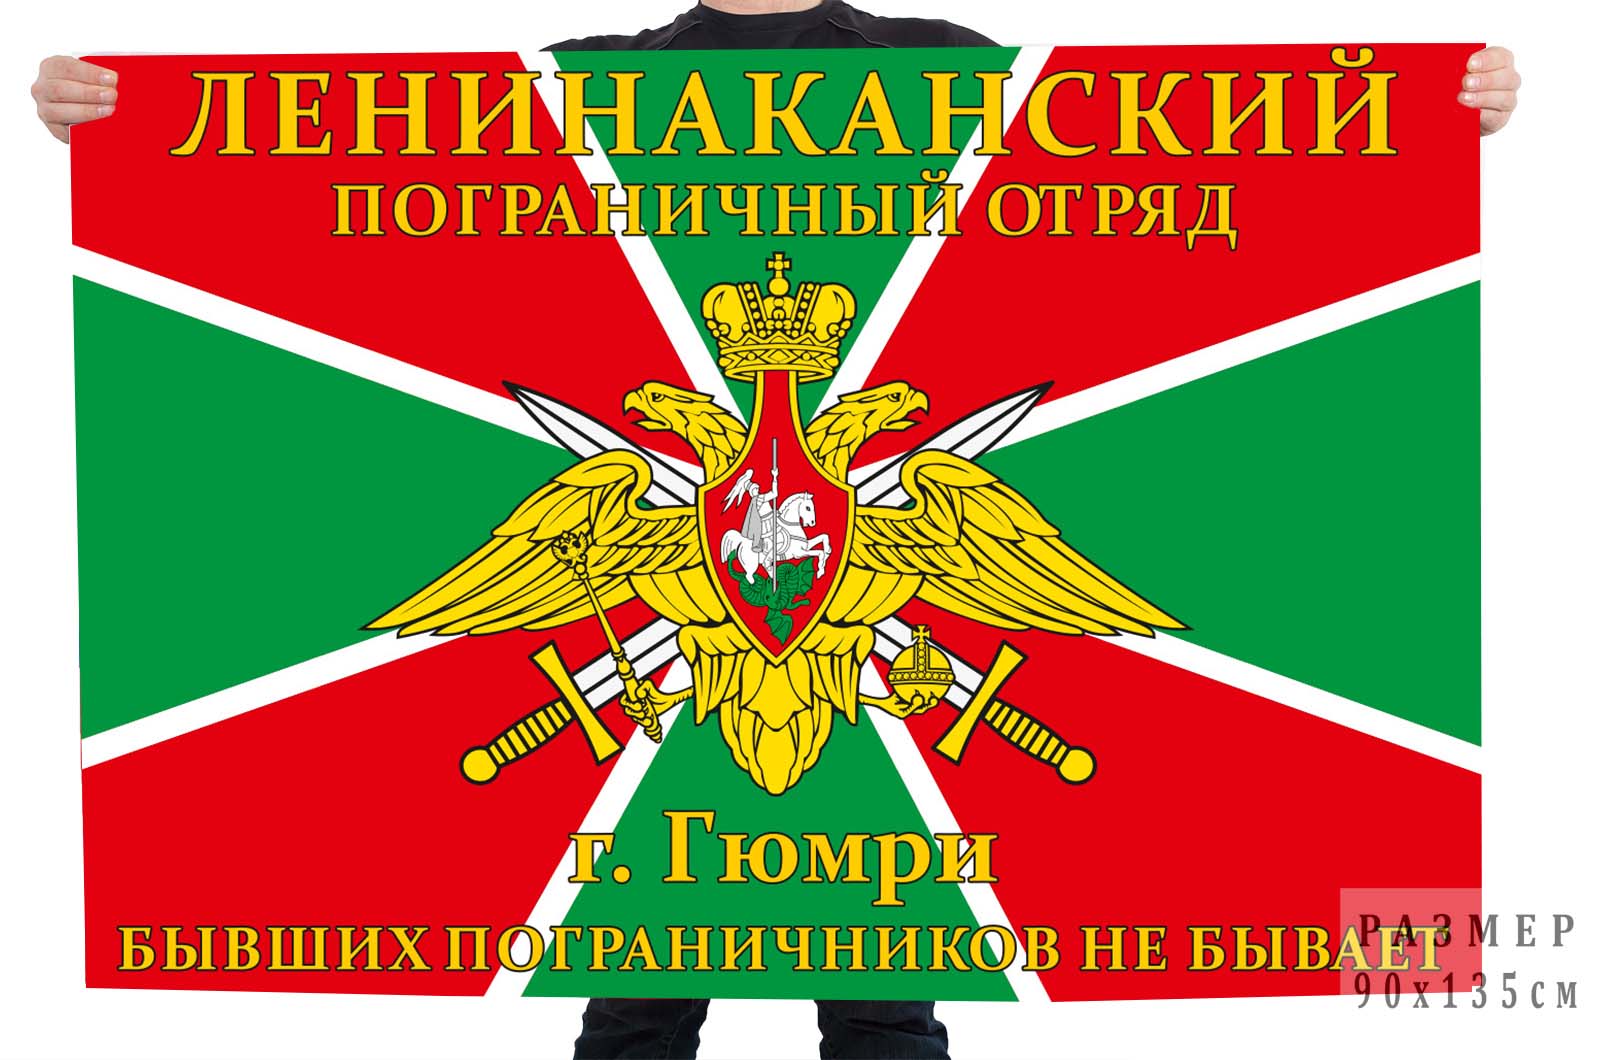 Купить в военторге флаг «Ленинаканский пограничный отряд, г. Гюмри»